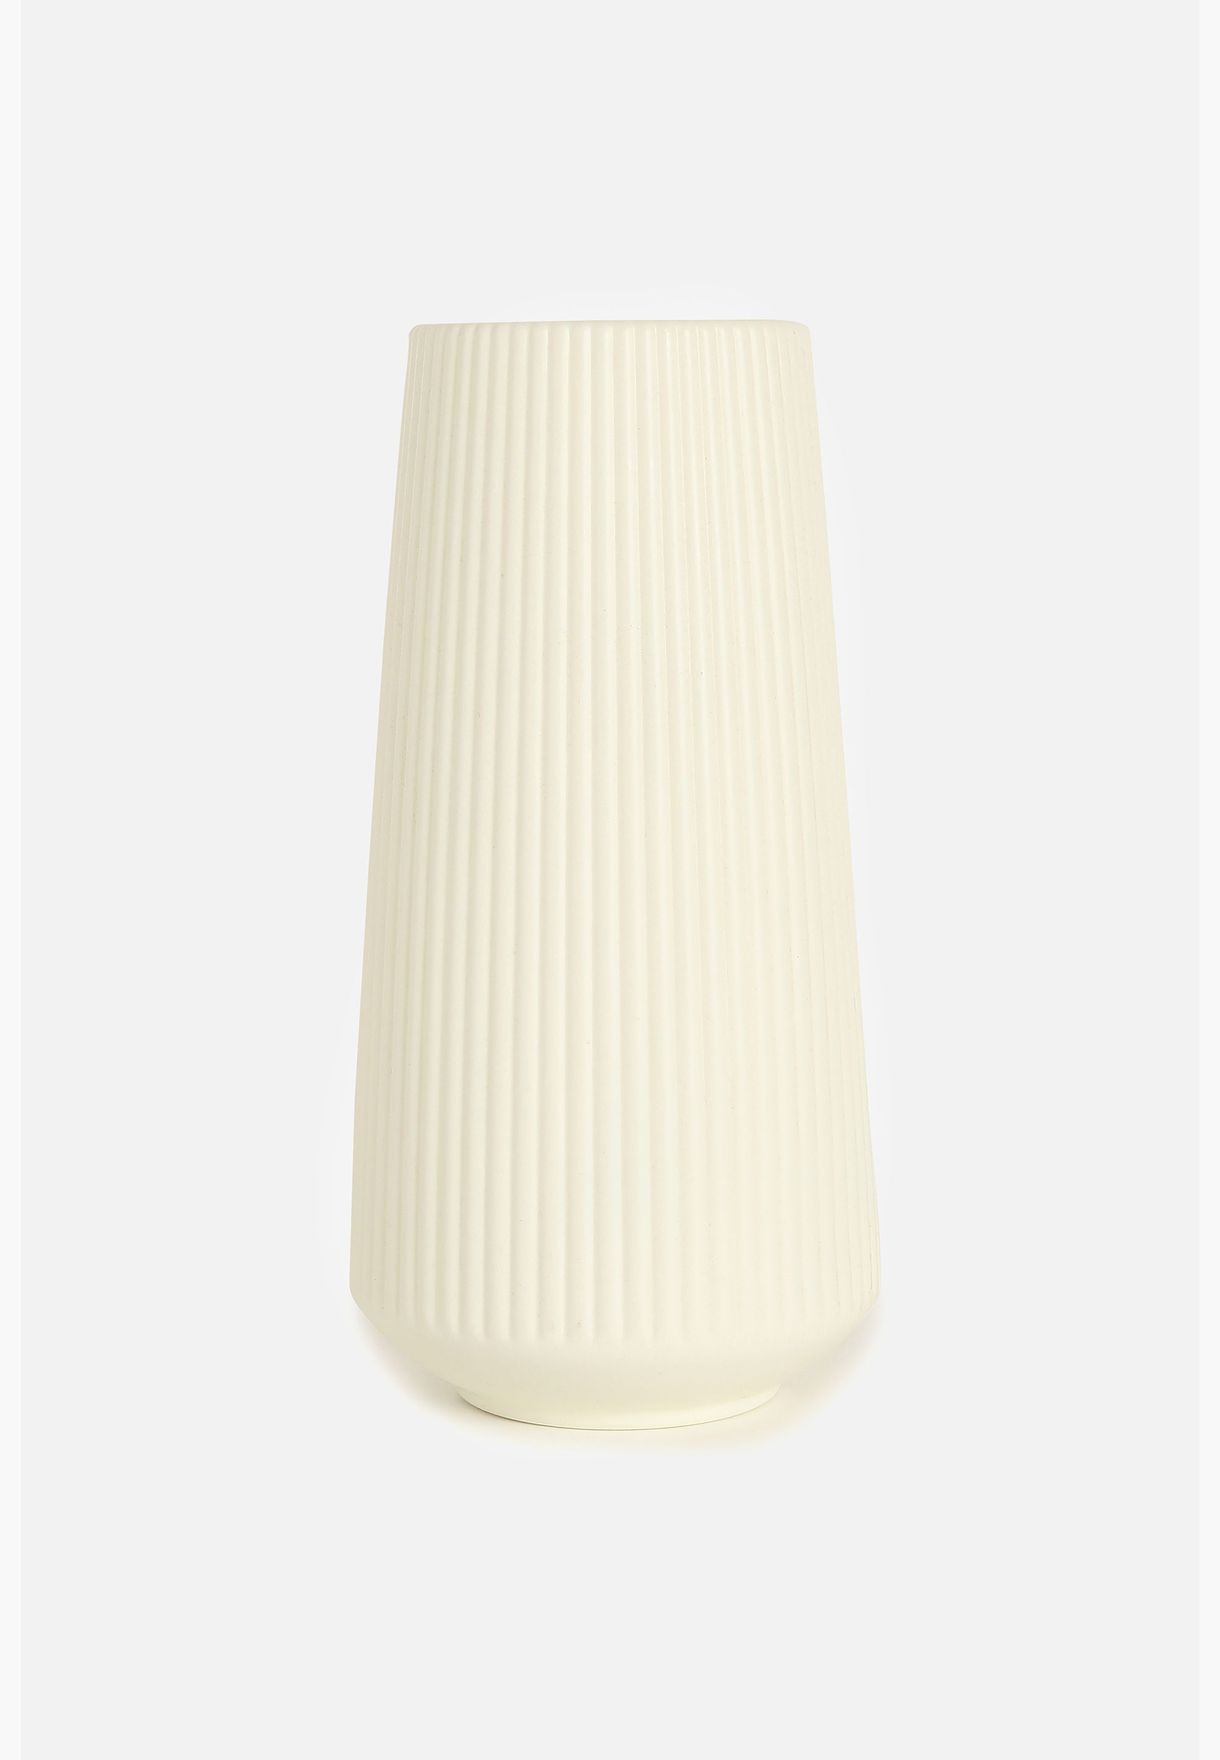 Striped Tall Round Modern Ceramic Flower Vase For Home Decor 